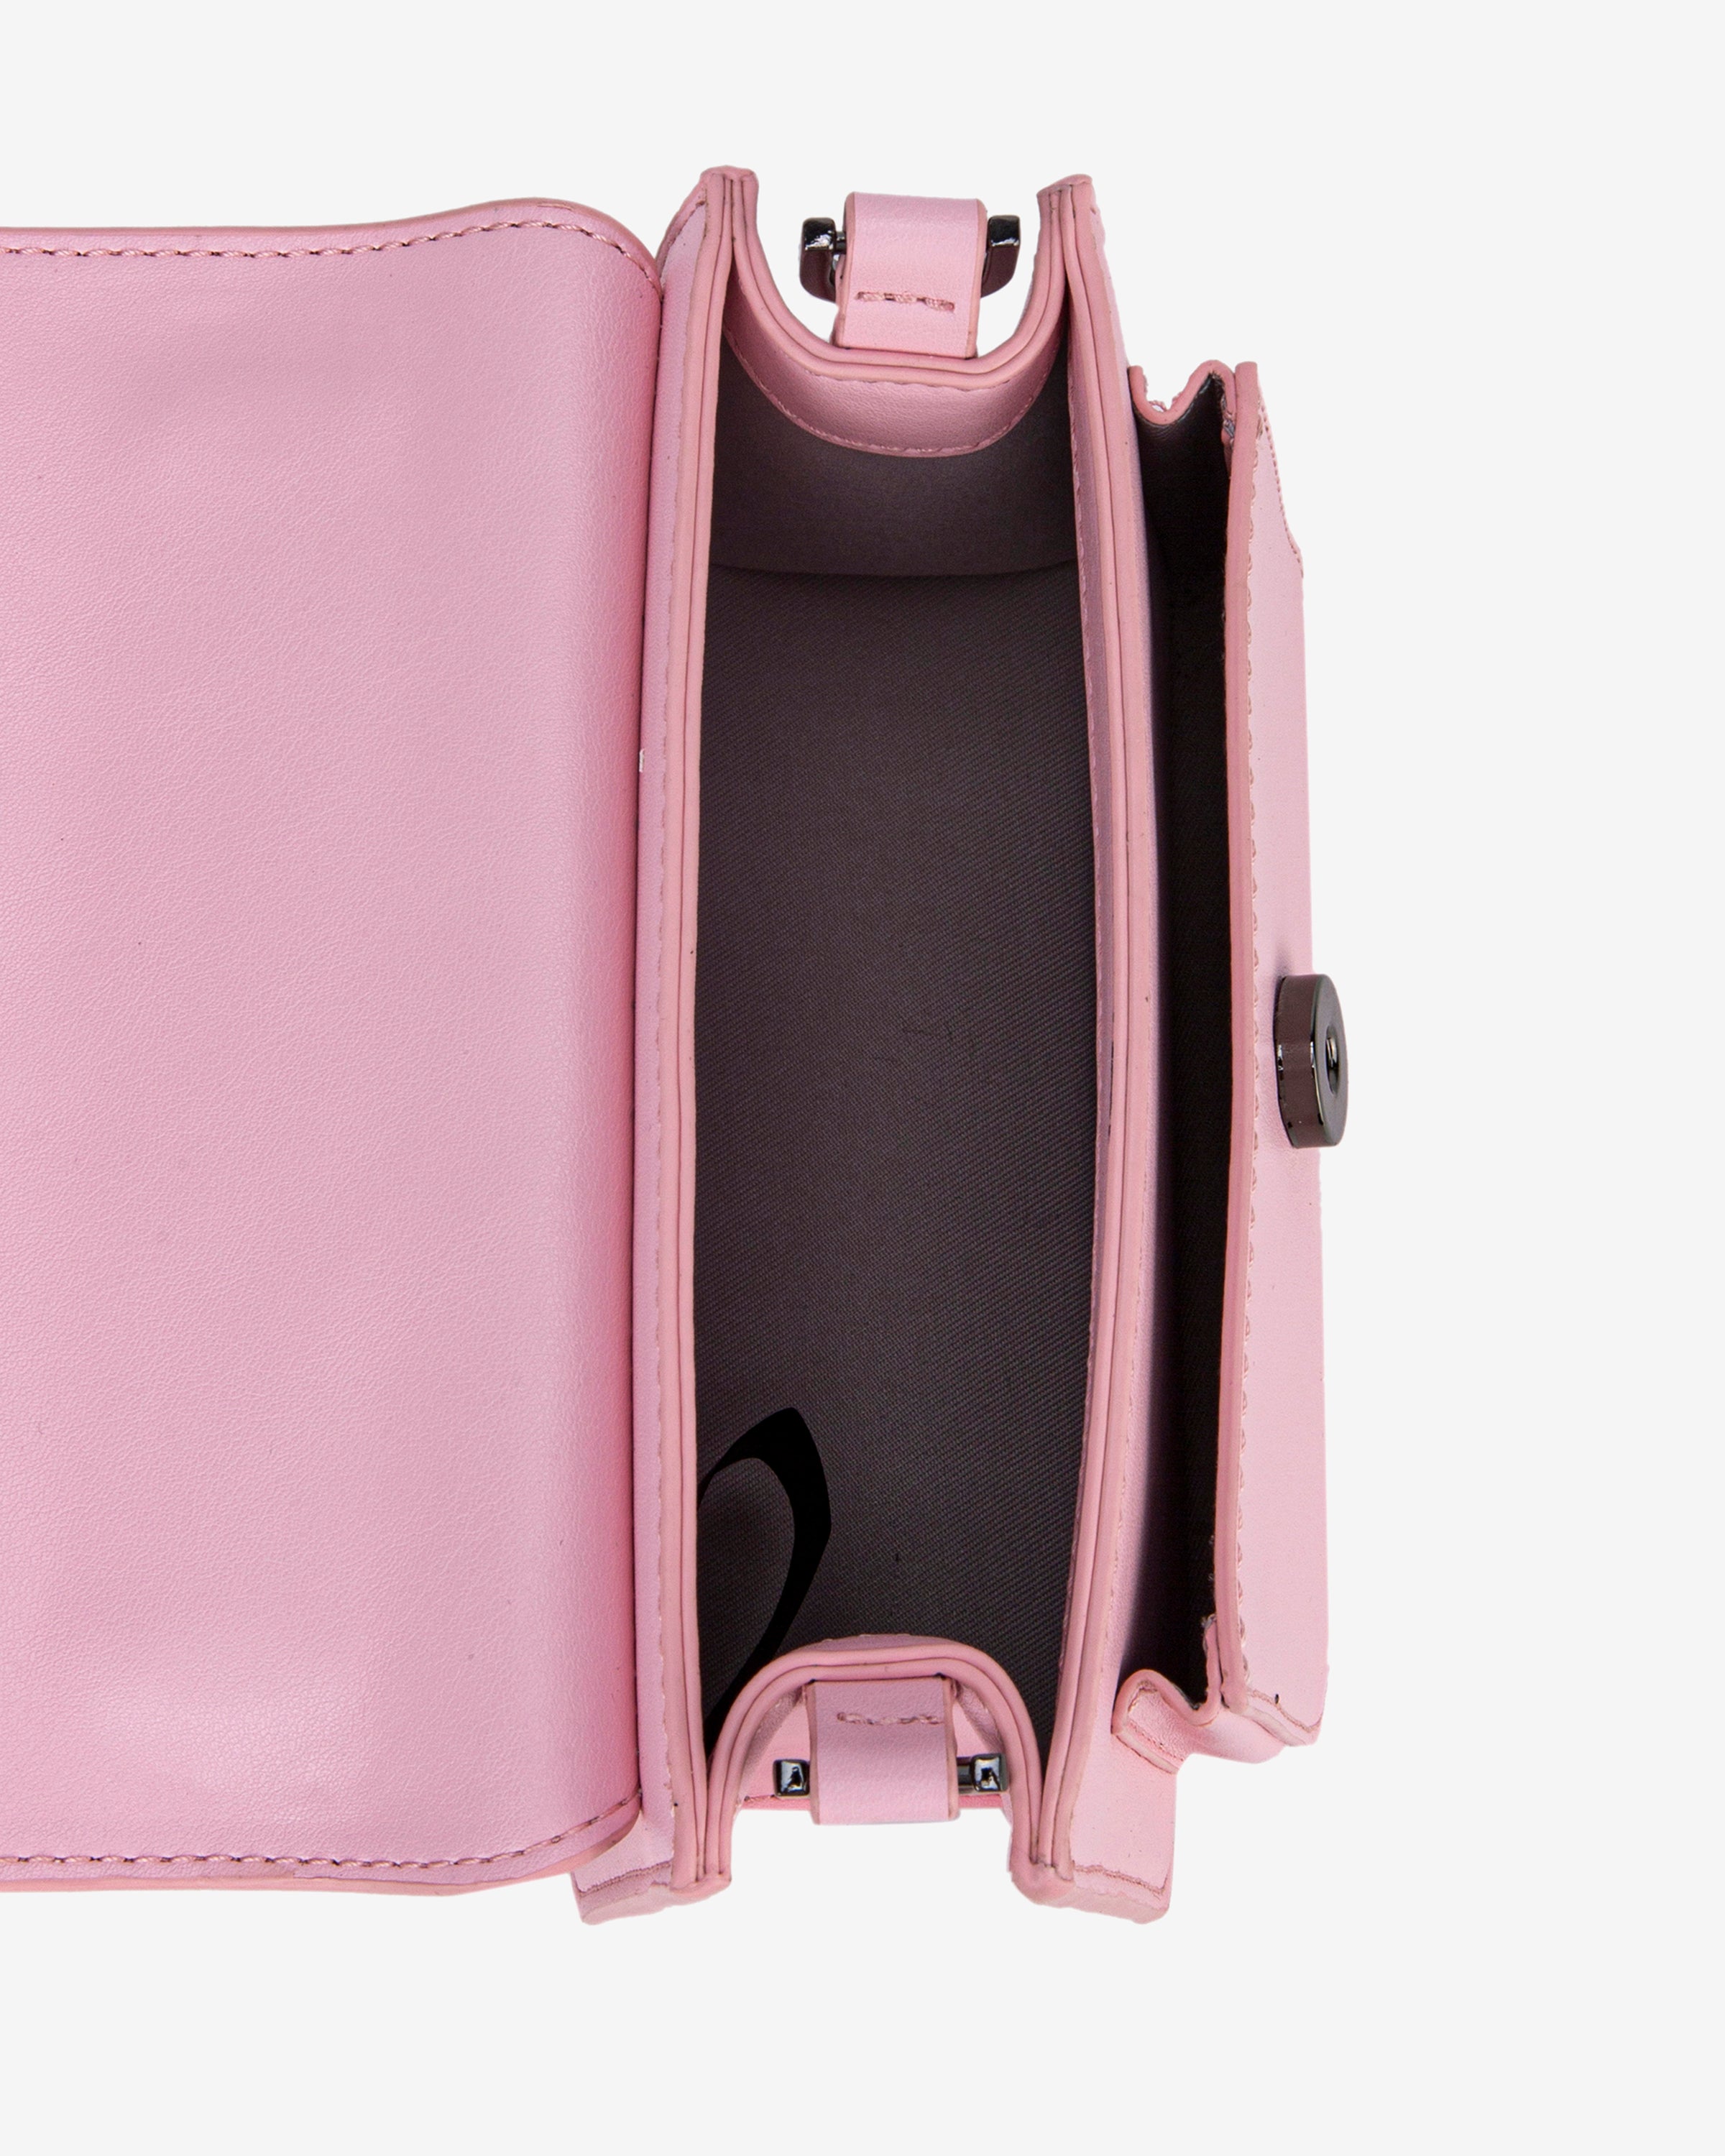 HVISK RENEI SOFT STRUCTURE Handle Bag 431 Blossom Pink